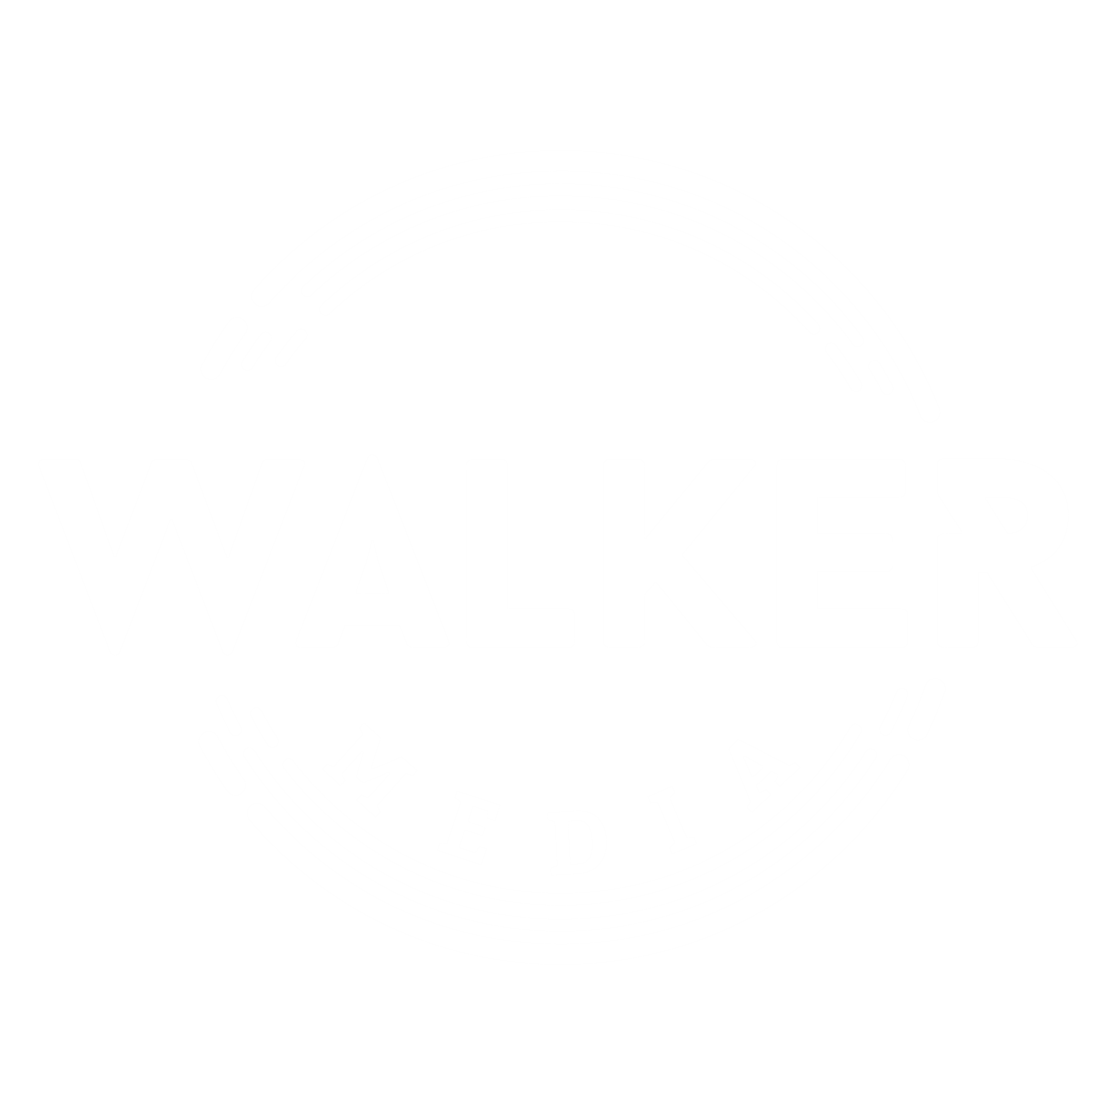 Walker Media